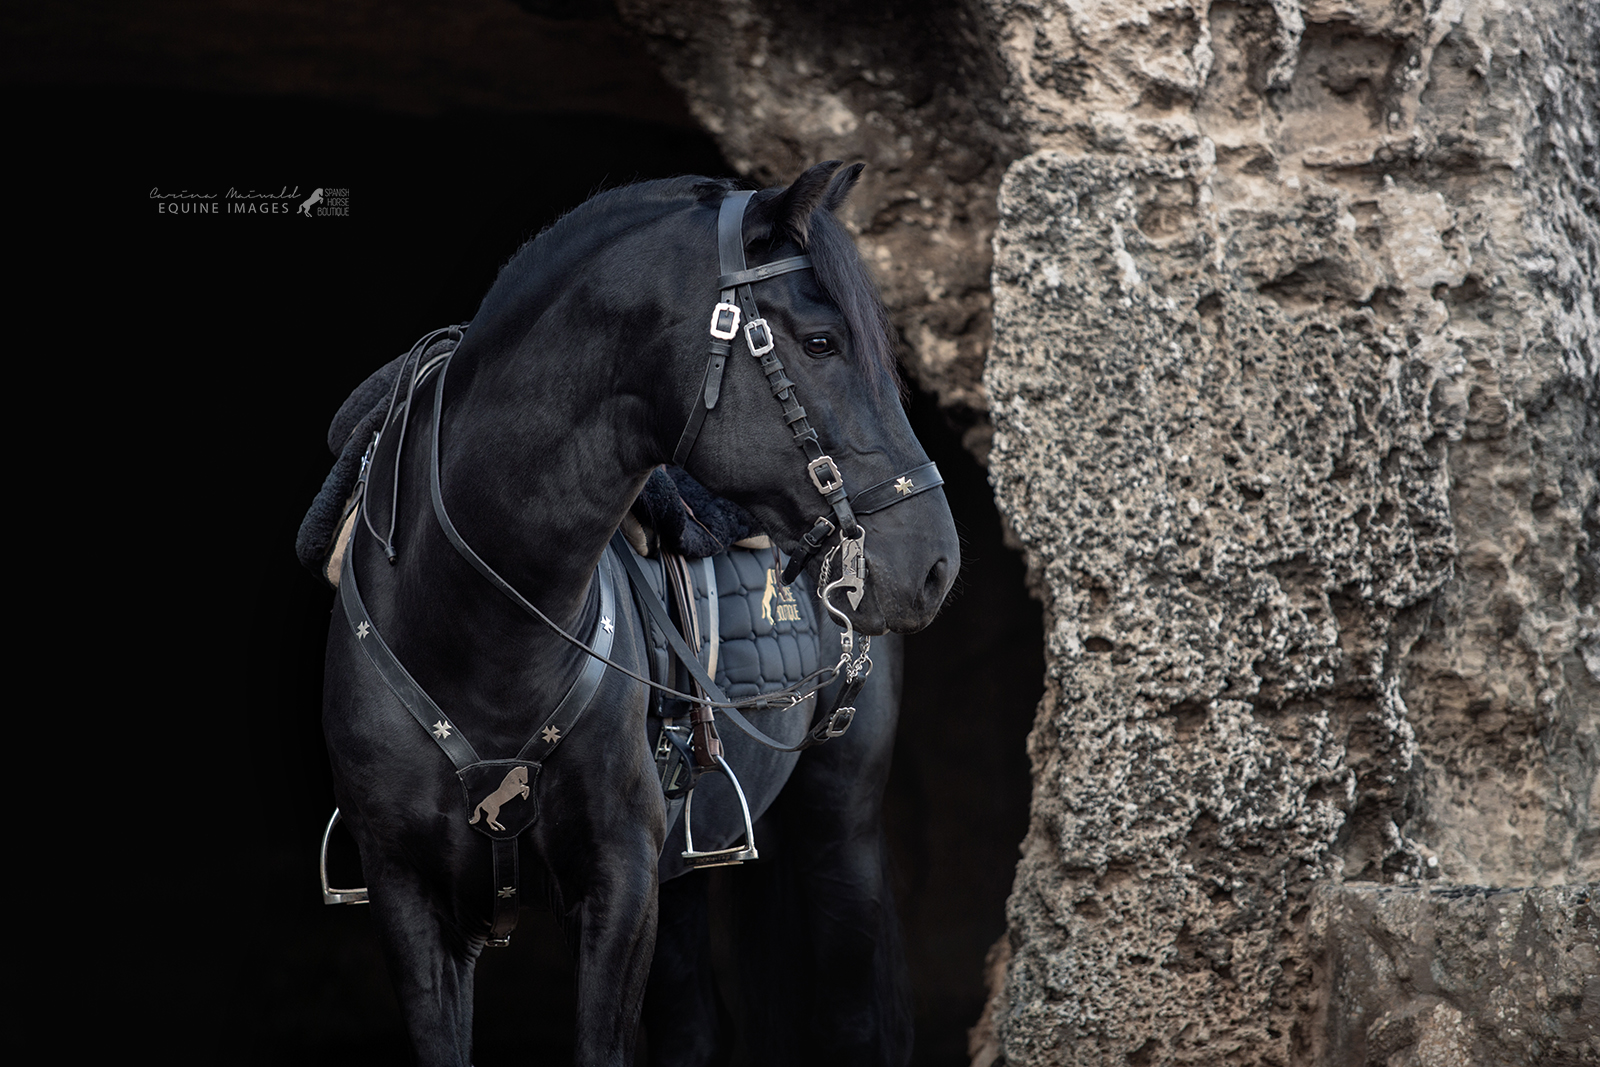 spanish saddle